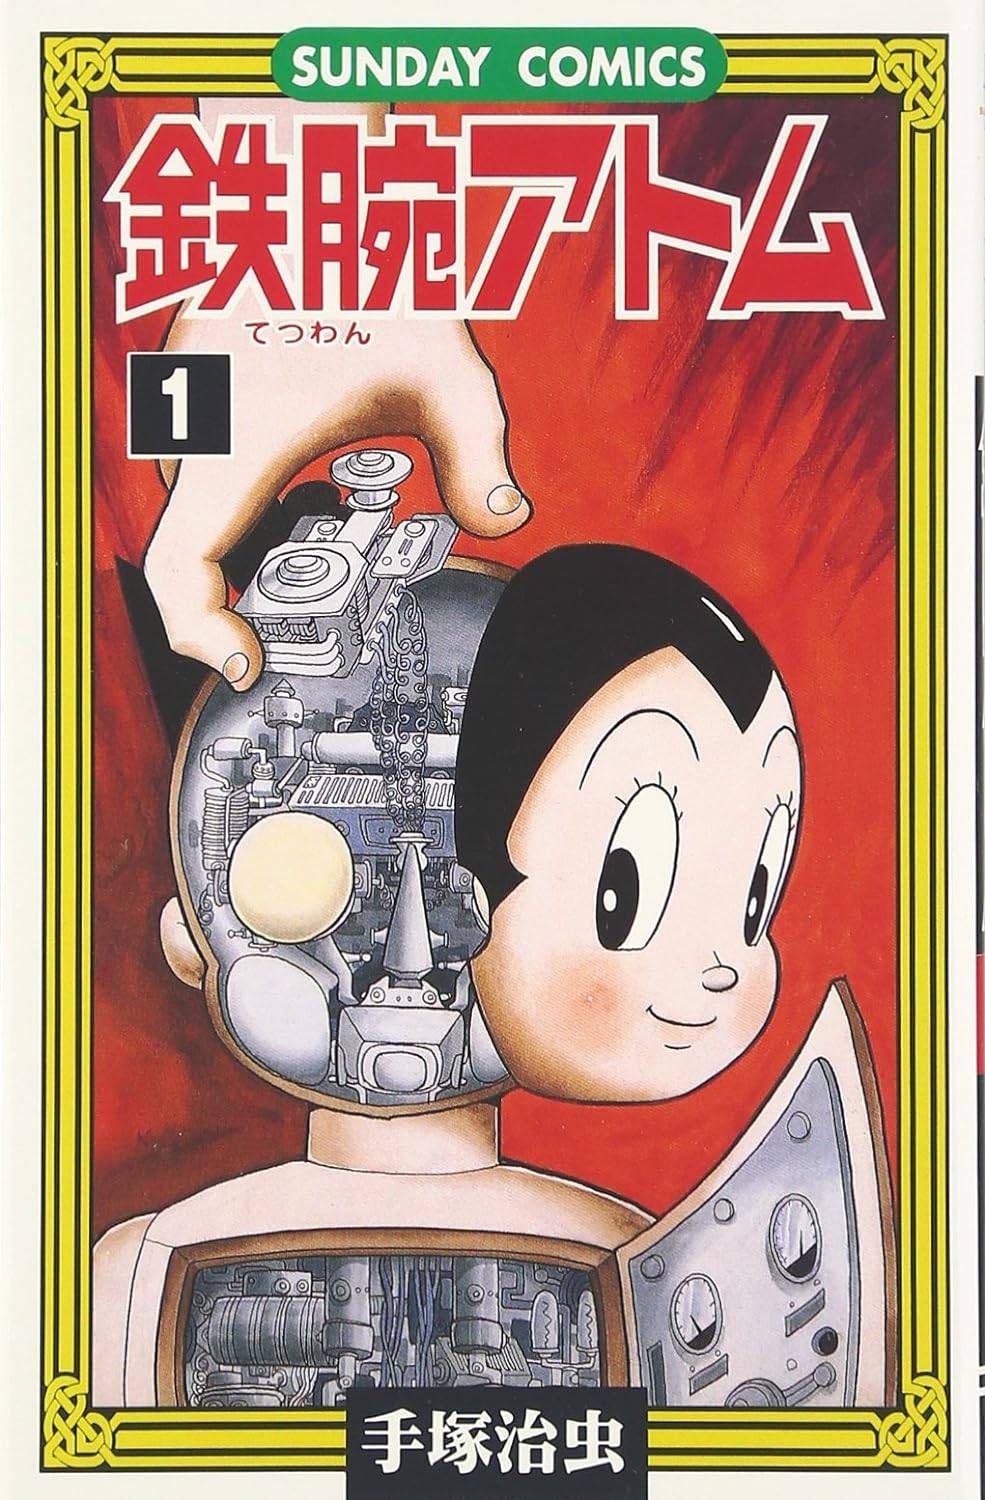 [ б/у комикс ] Astro Boy все 21 шт .. комплект ( Akita книжный магазин SUNDAYCOMICS) в аренду * манга . чай .. все тома в комплекте б/у комикс комплект 